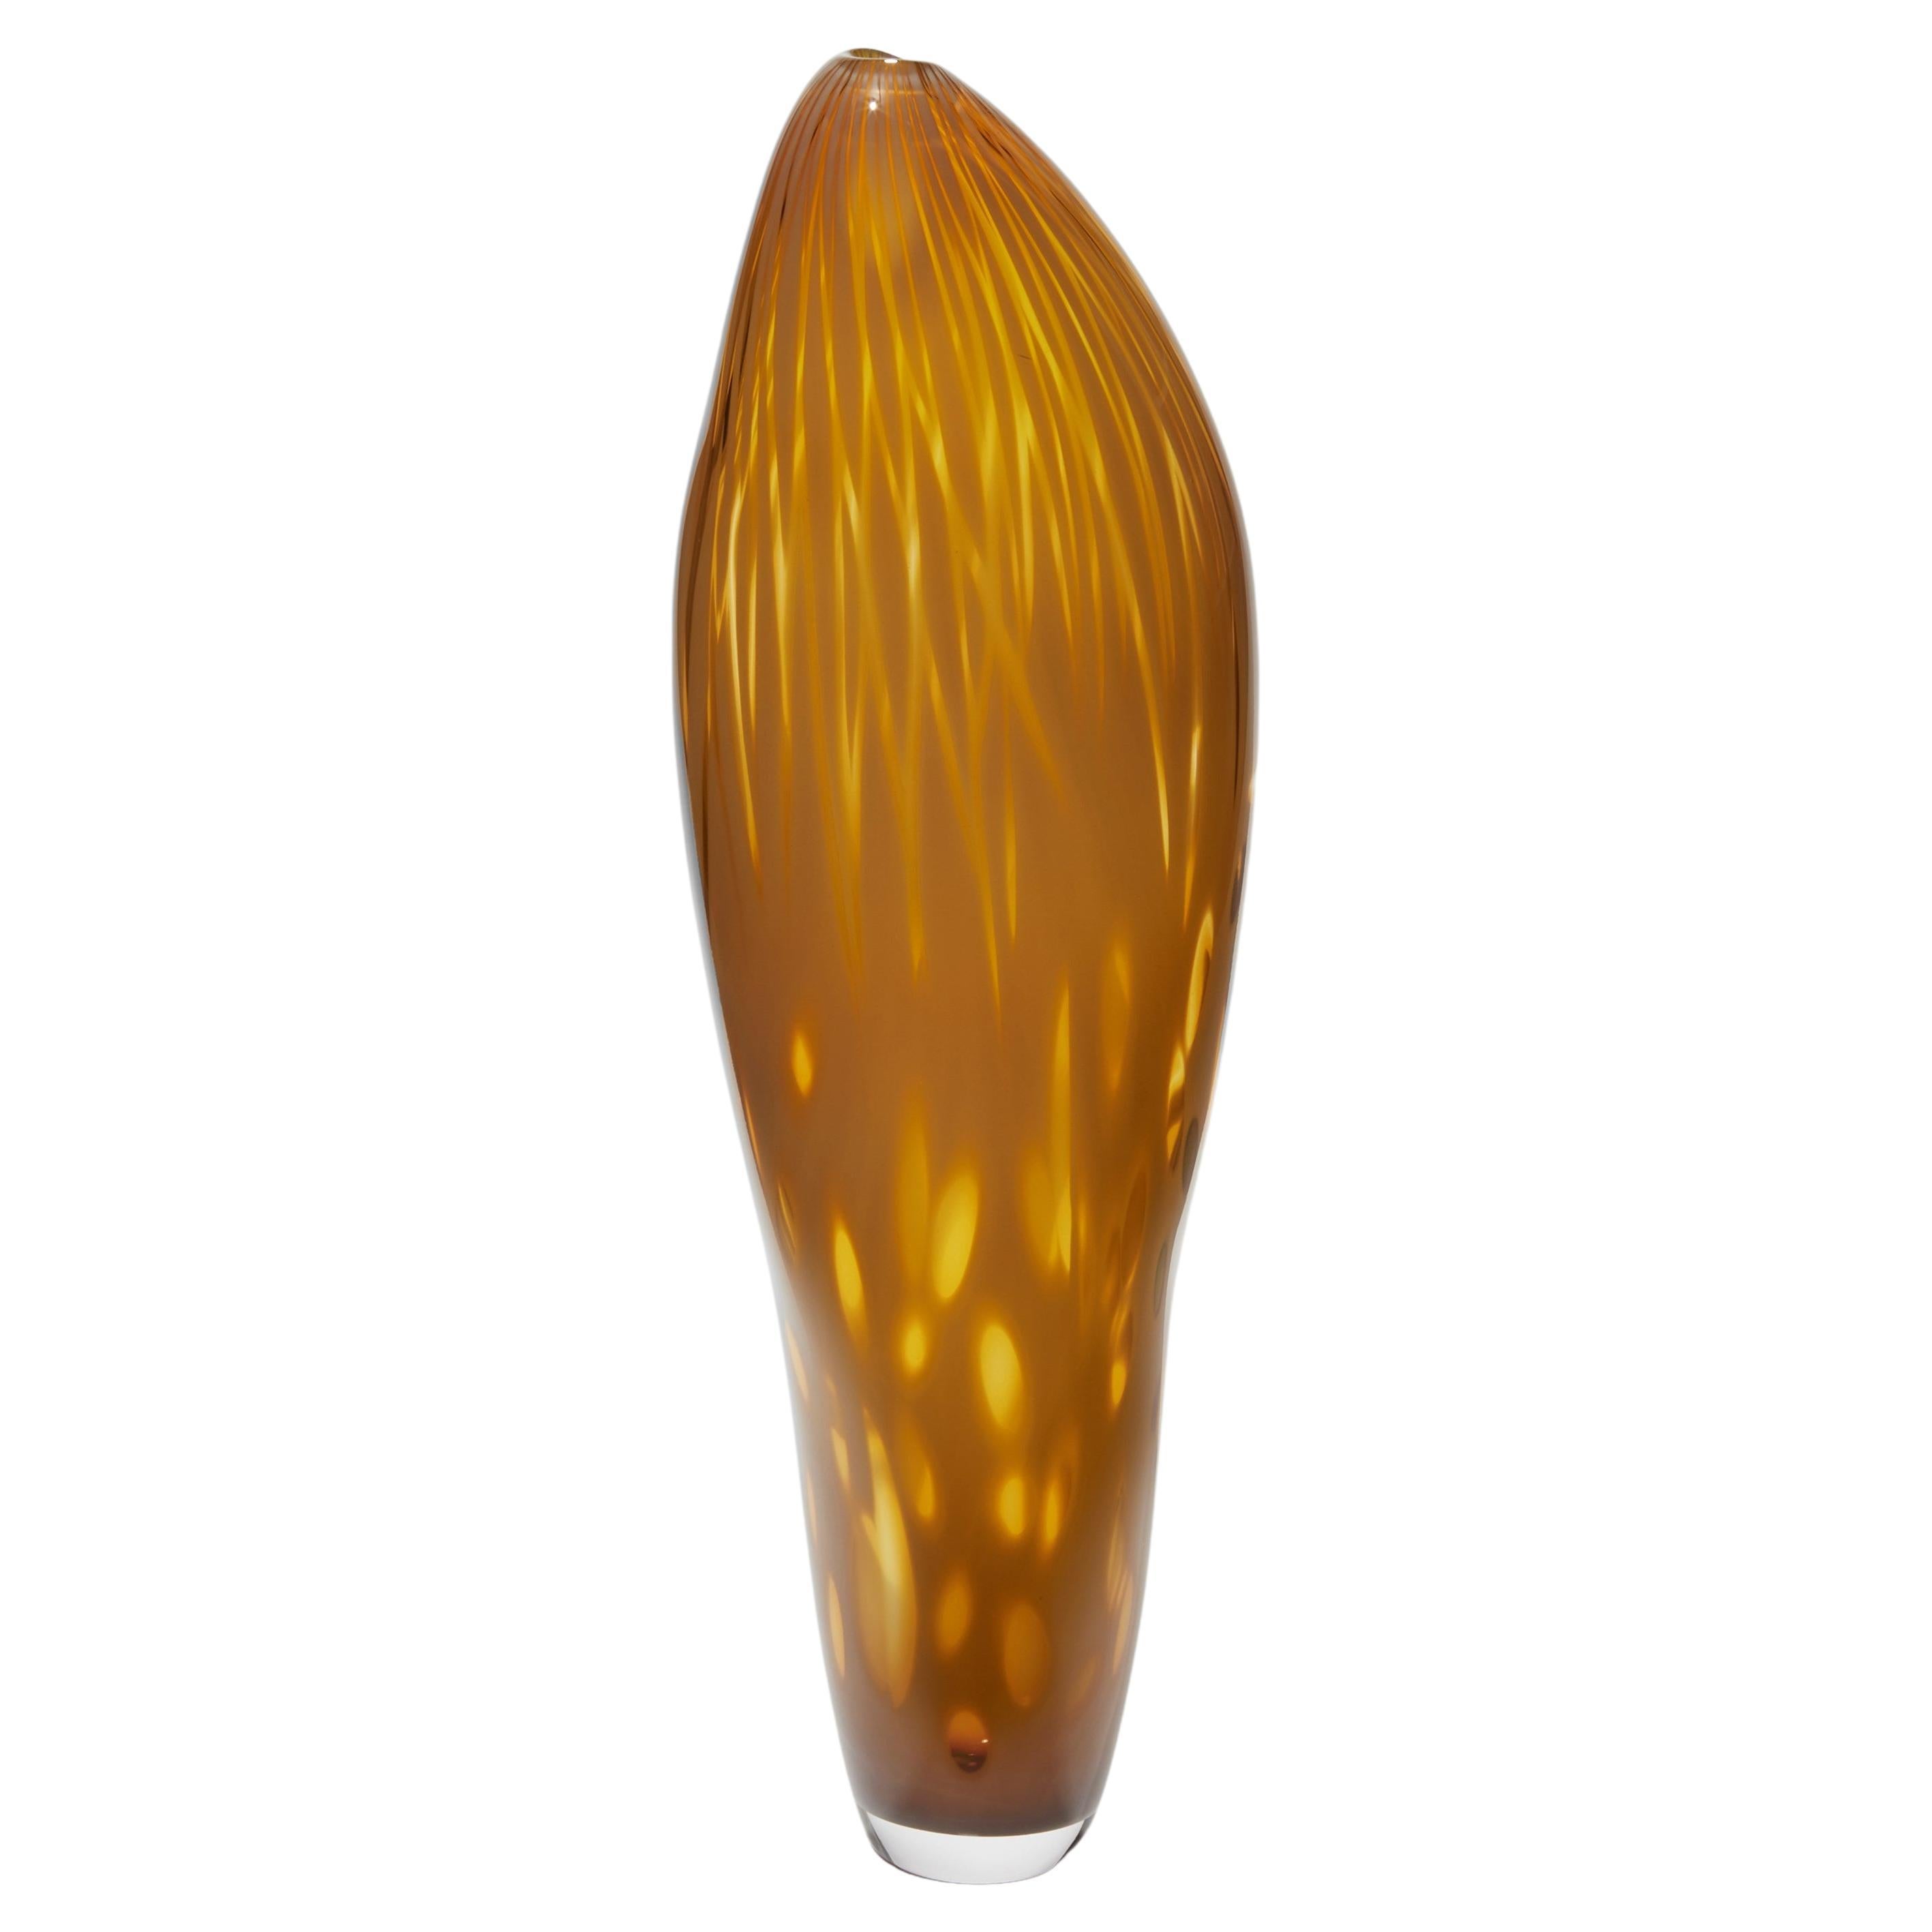  Hibiscus doré, vase soufflé à la main de Michèle Oberdieck, riche en ambre foncé / jaune